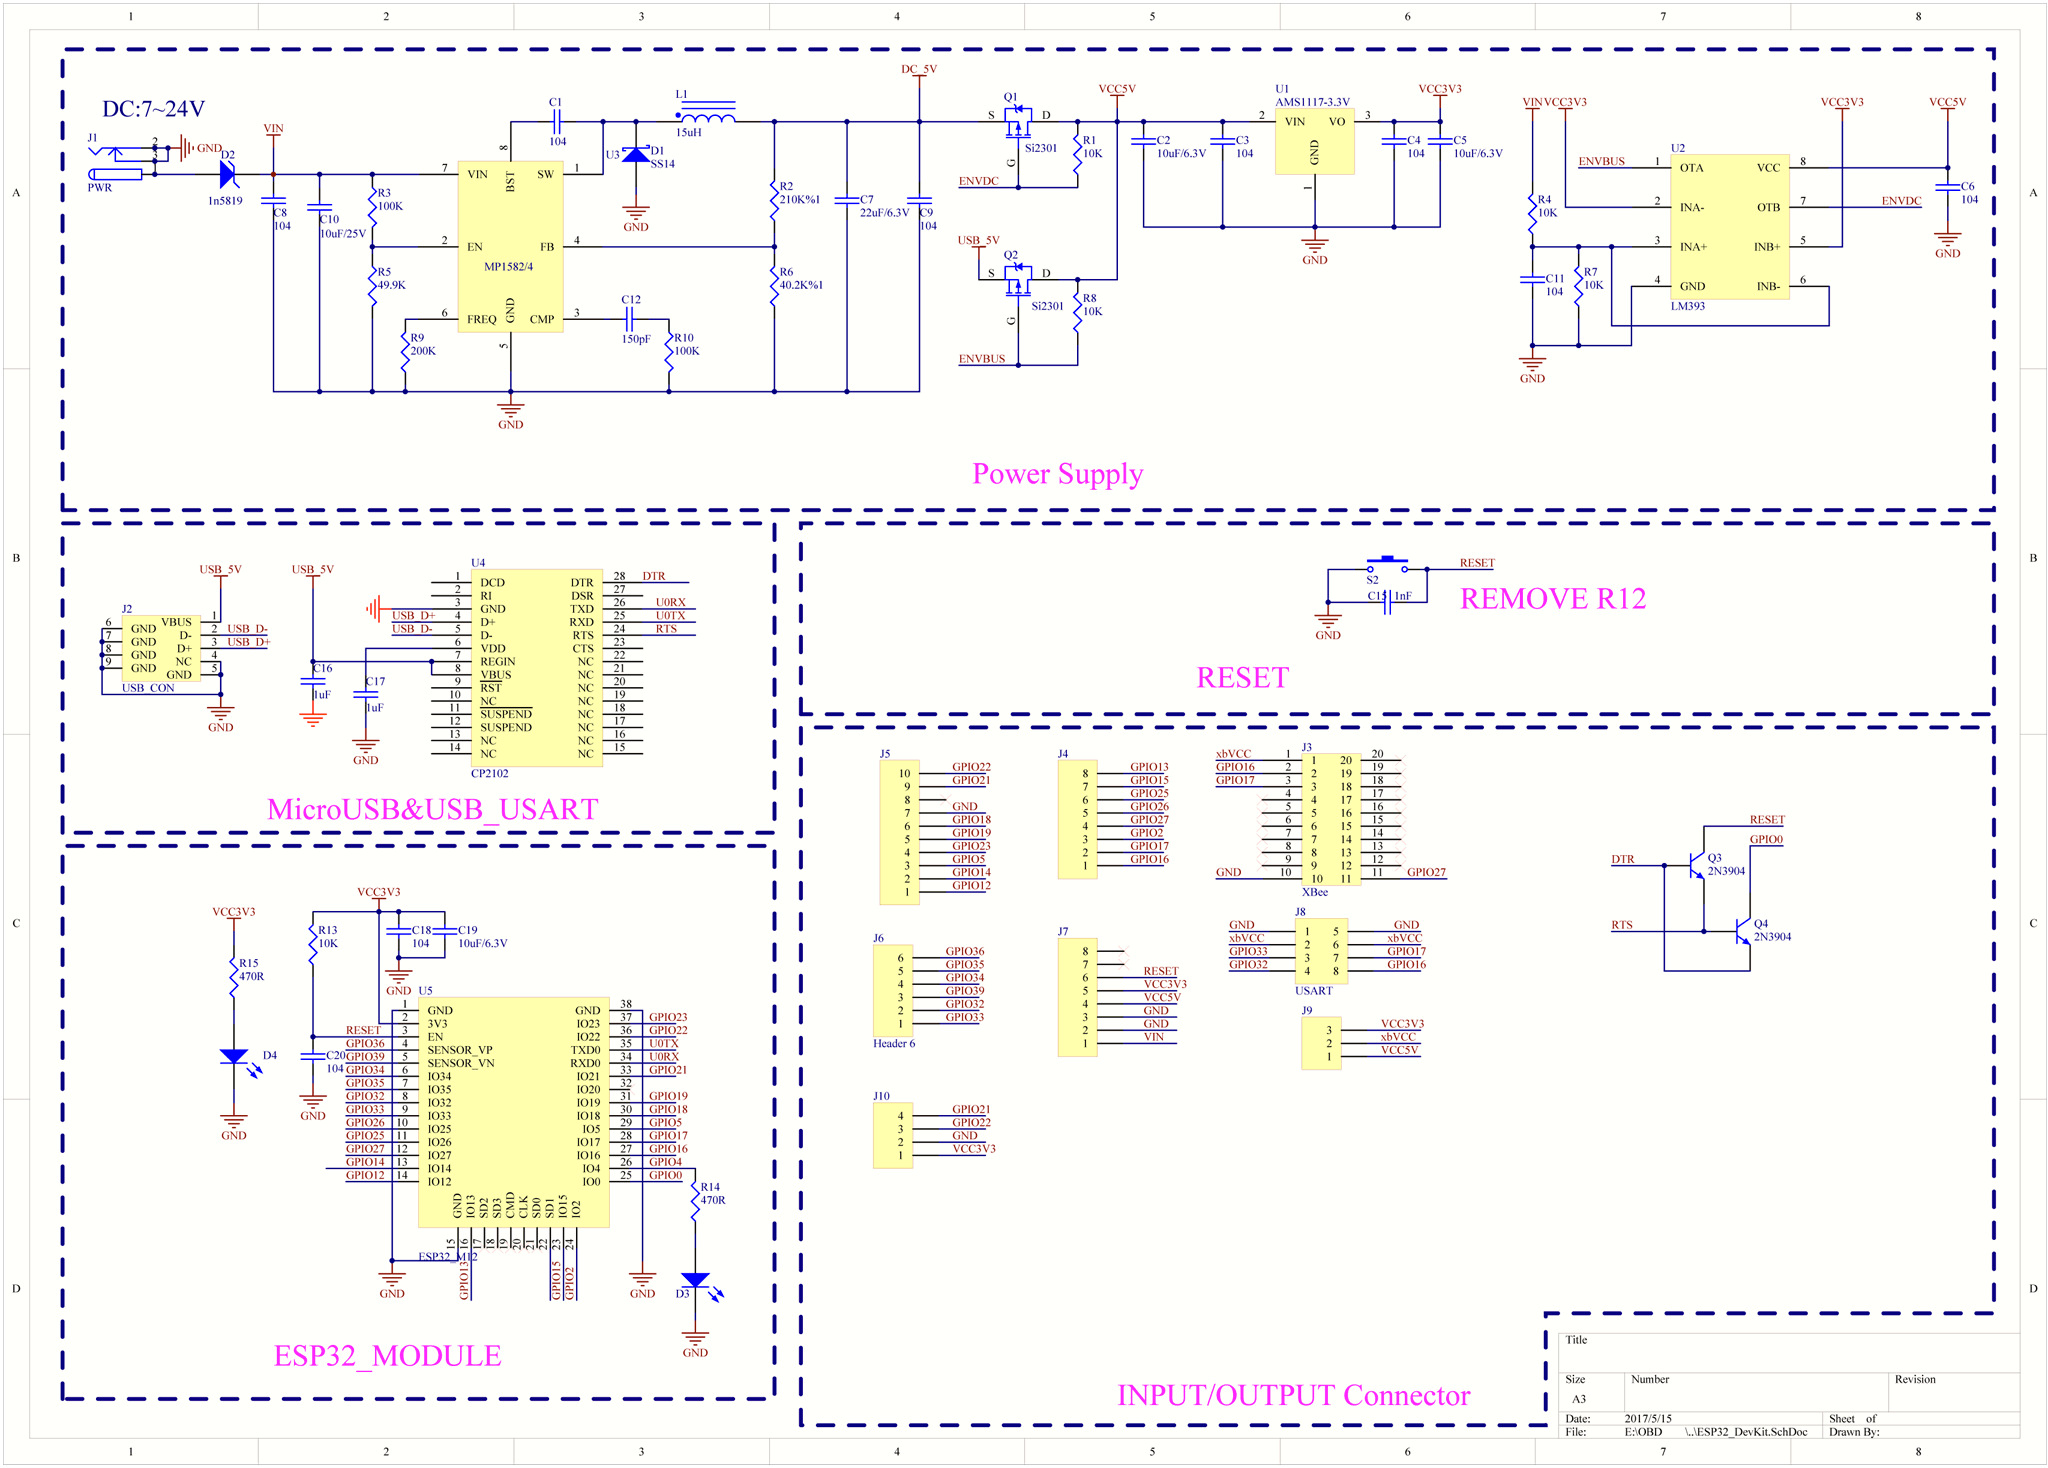 Sim800c hardware design